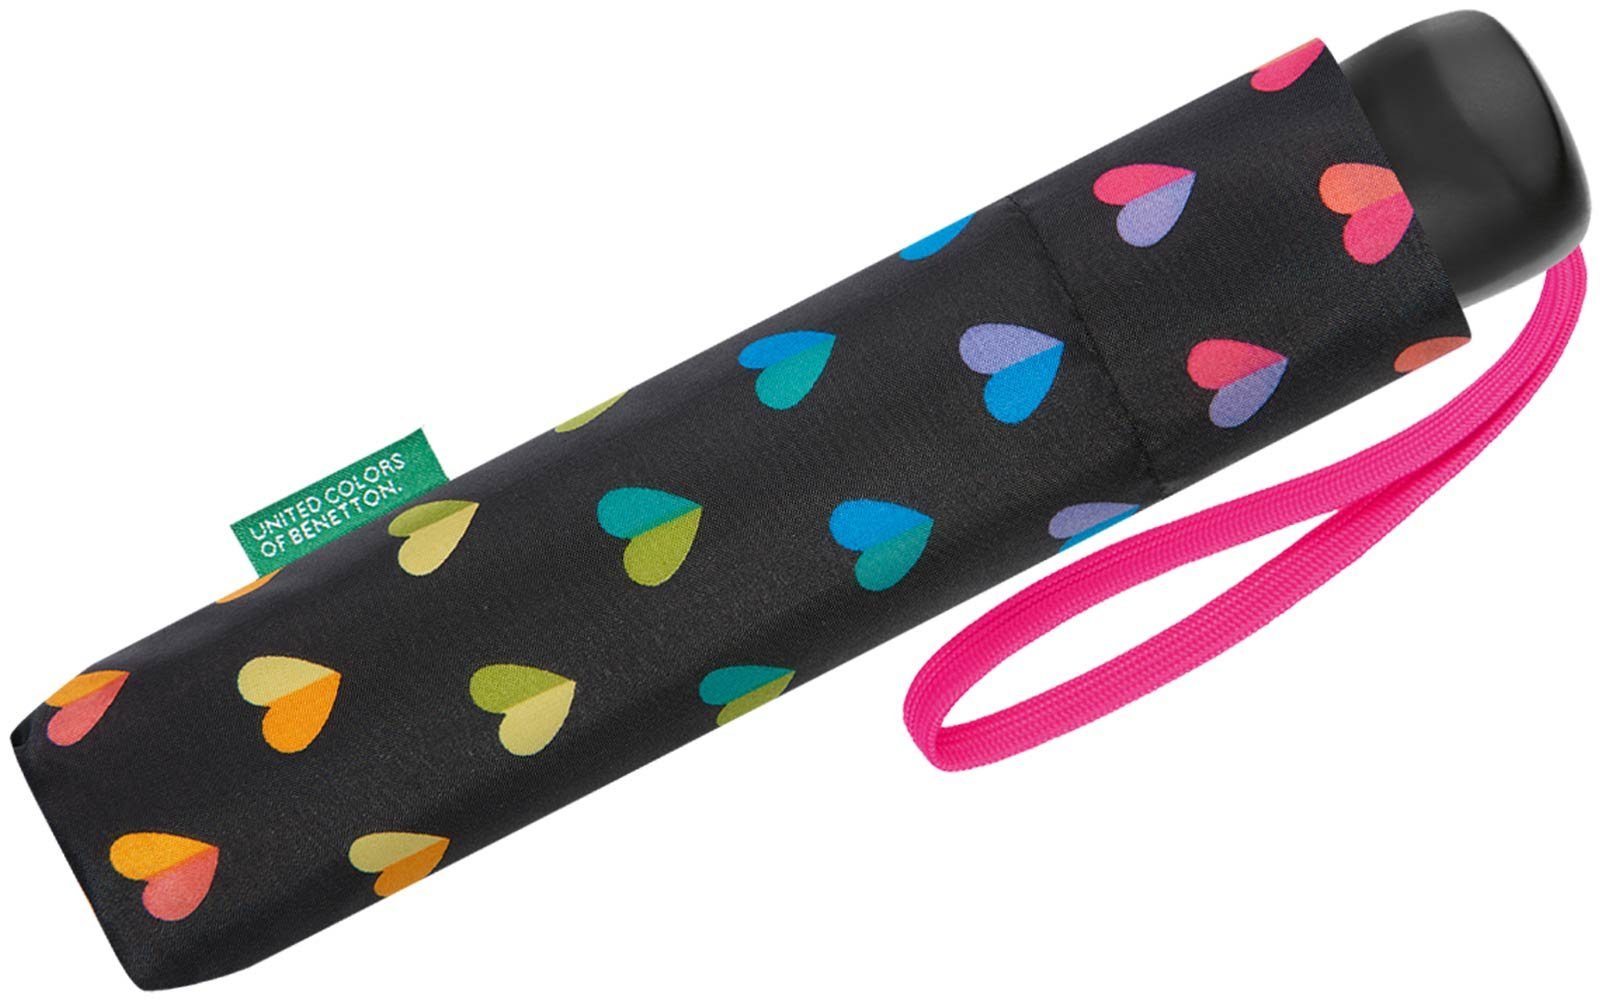 mit United Colors regenbogen-farbigem Taschenschirm stabiler, Handöffner, of Herzen-Muster mit manueller Langregenschirm Benetton